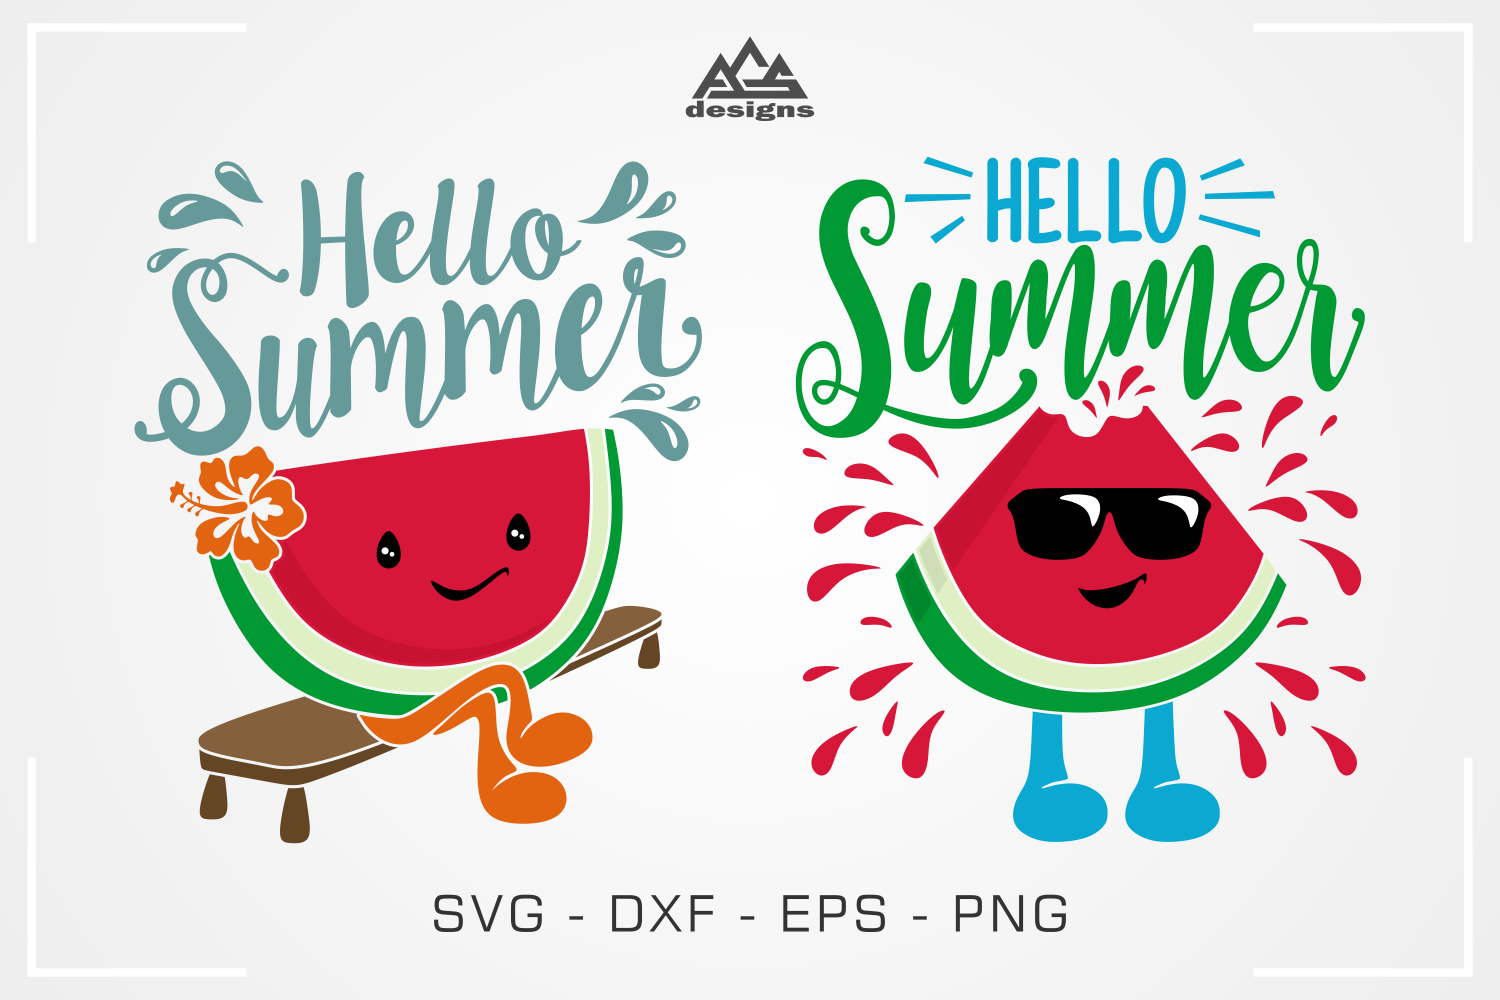 Hello Summer Watermelon Svg Design By AgsDesign ...